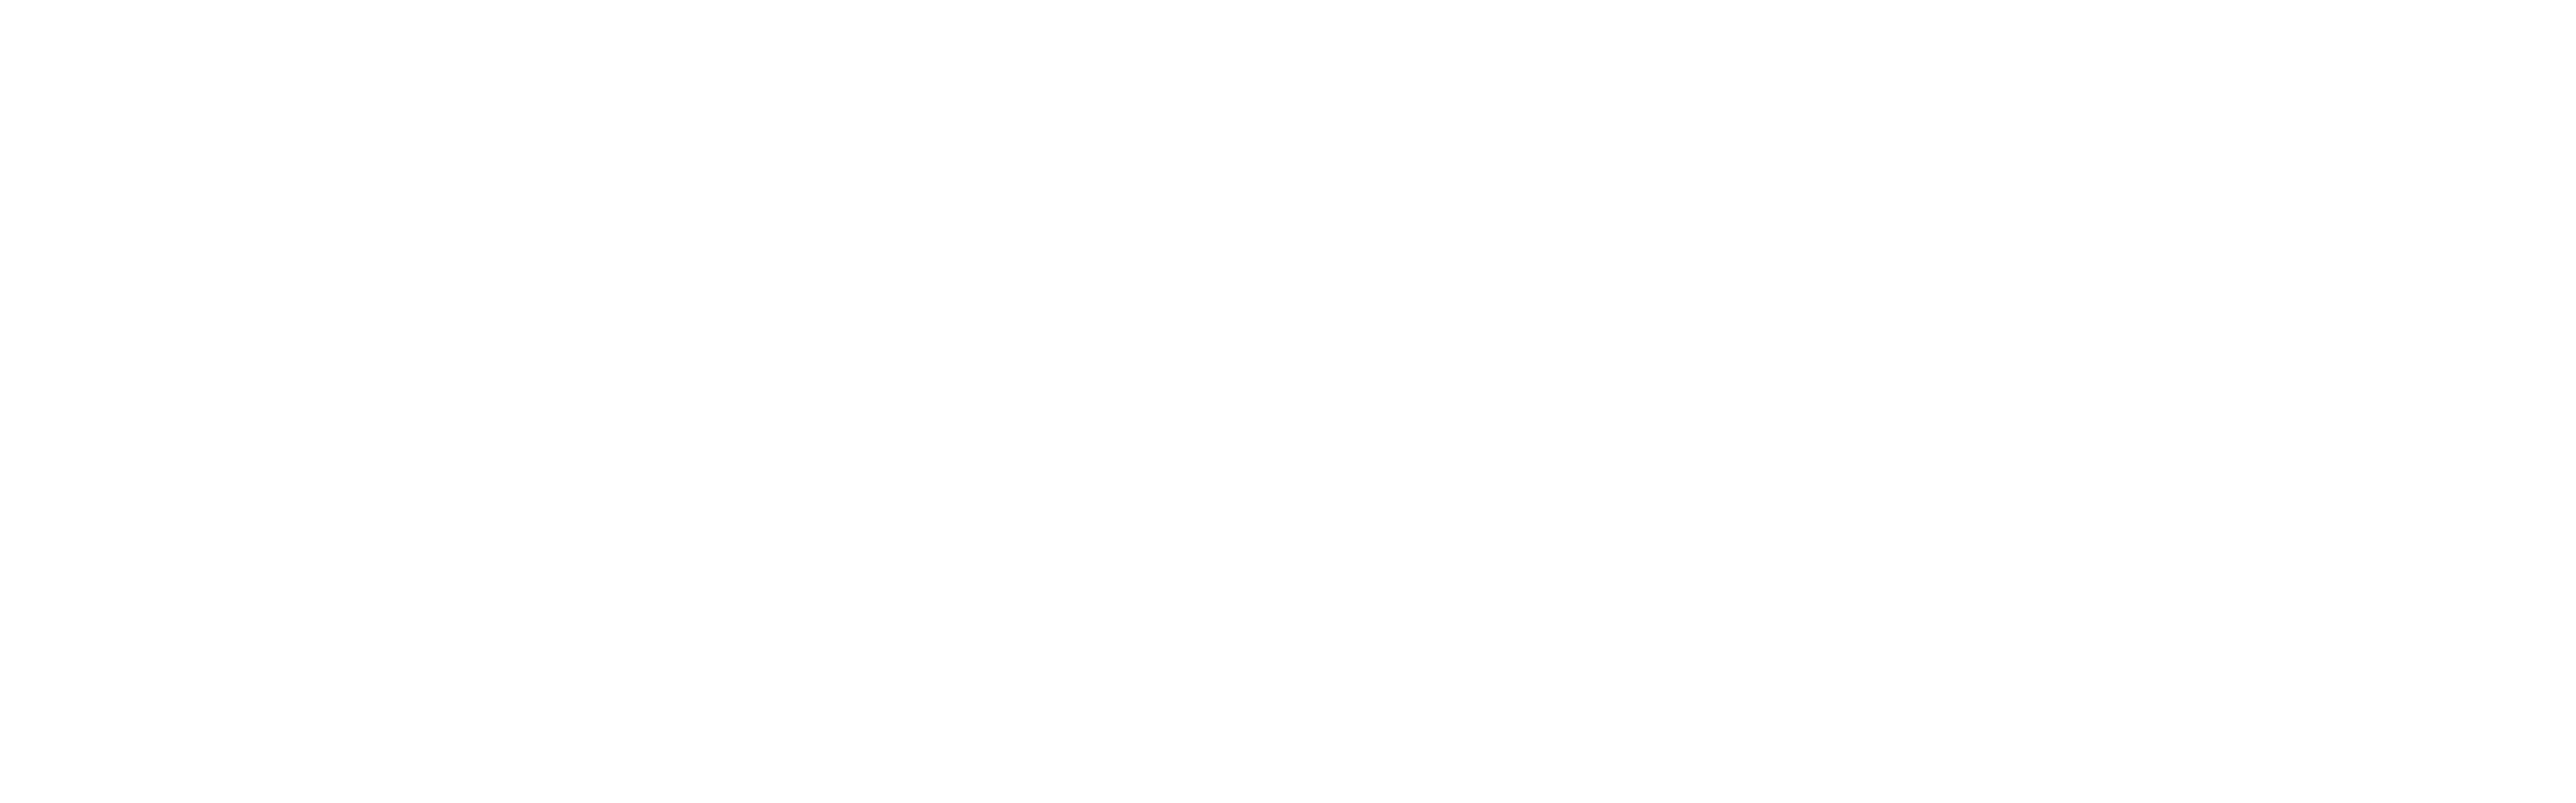 King Street medical centre murwillumbah